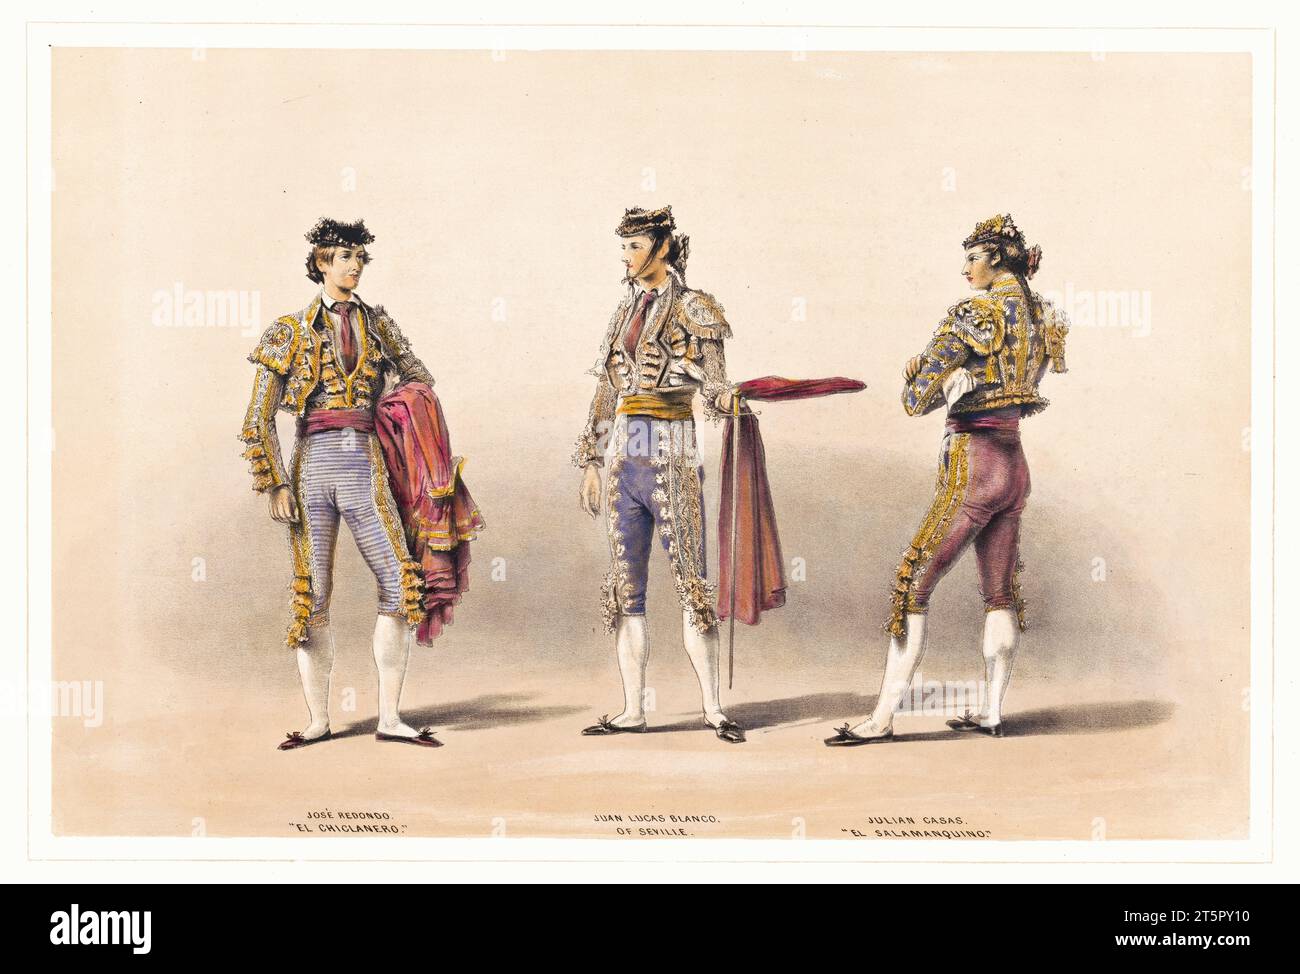 Vieille illustration montrant trois matadors en costume traditionnel de tauromachie. Par Price and Lake, publ. ca 1865 Banque D'Images